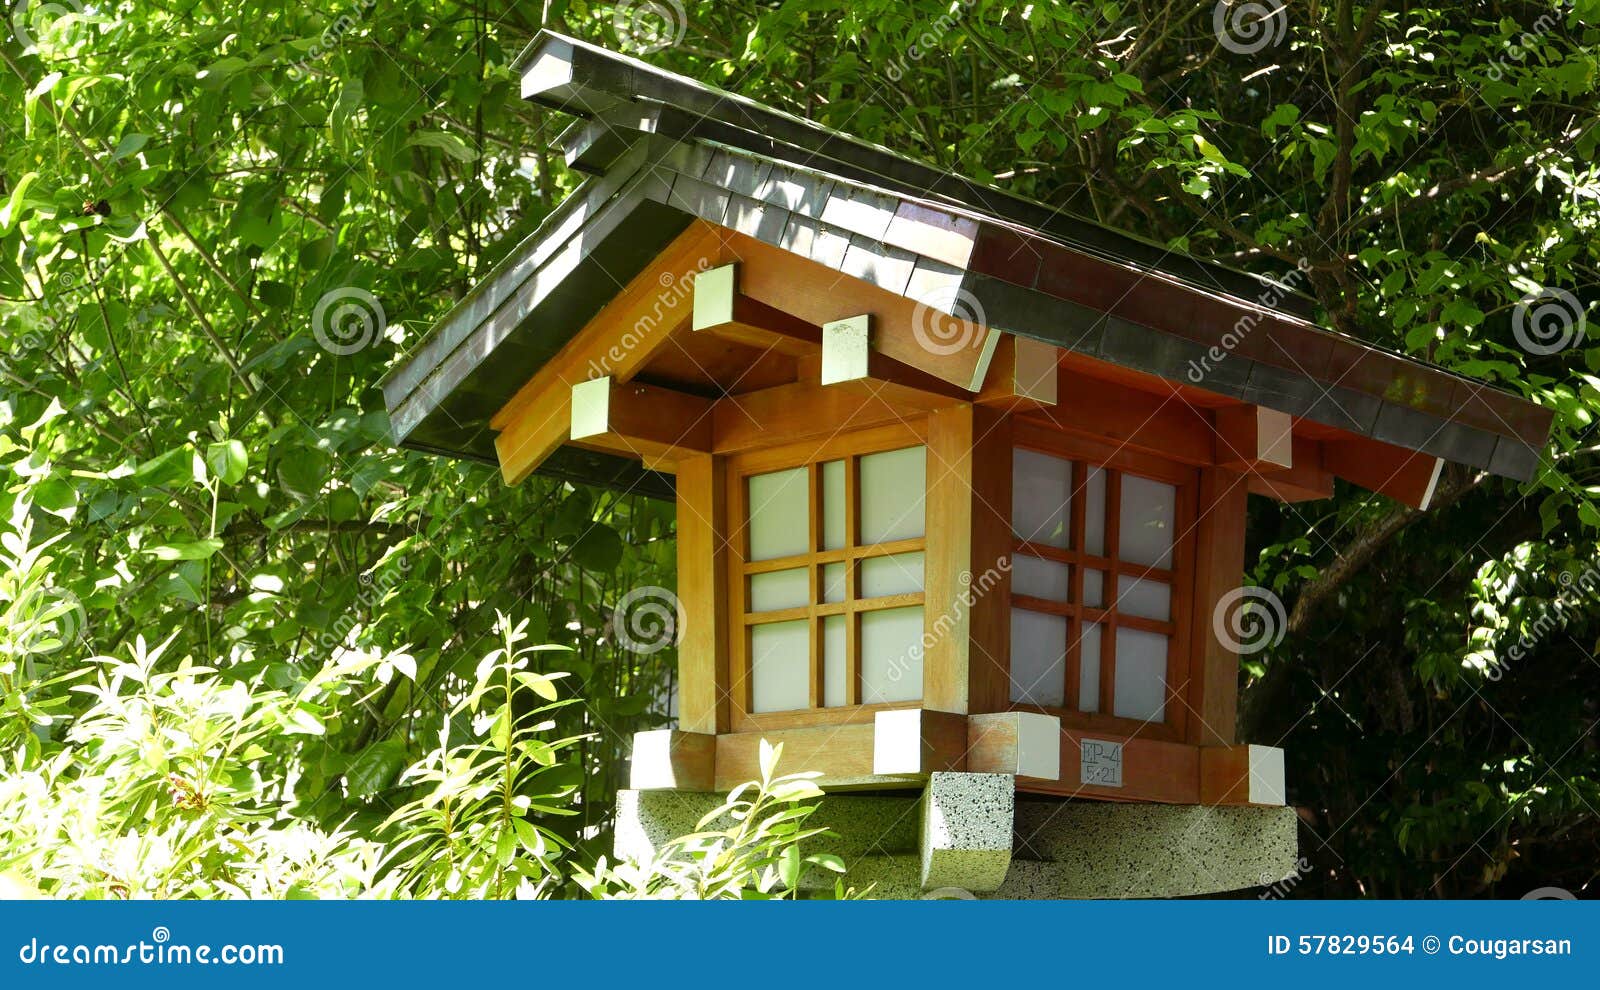 Outdoor Traditional Wooden Lamp in Zen Garden Stock Photo - Image of ...